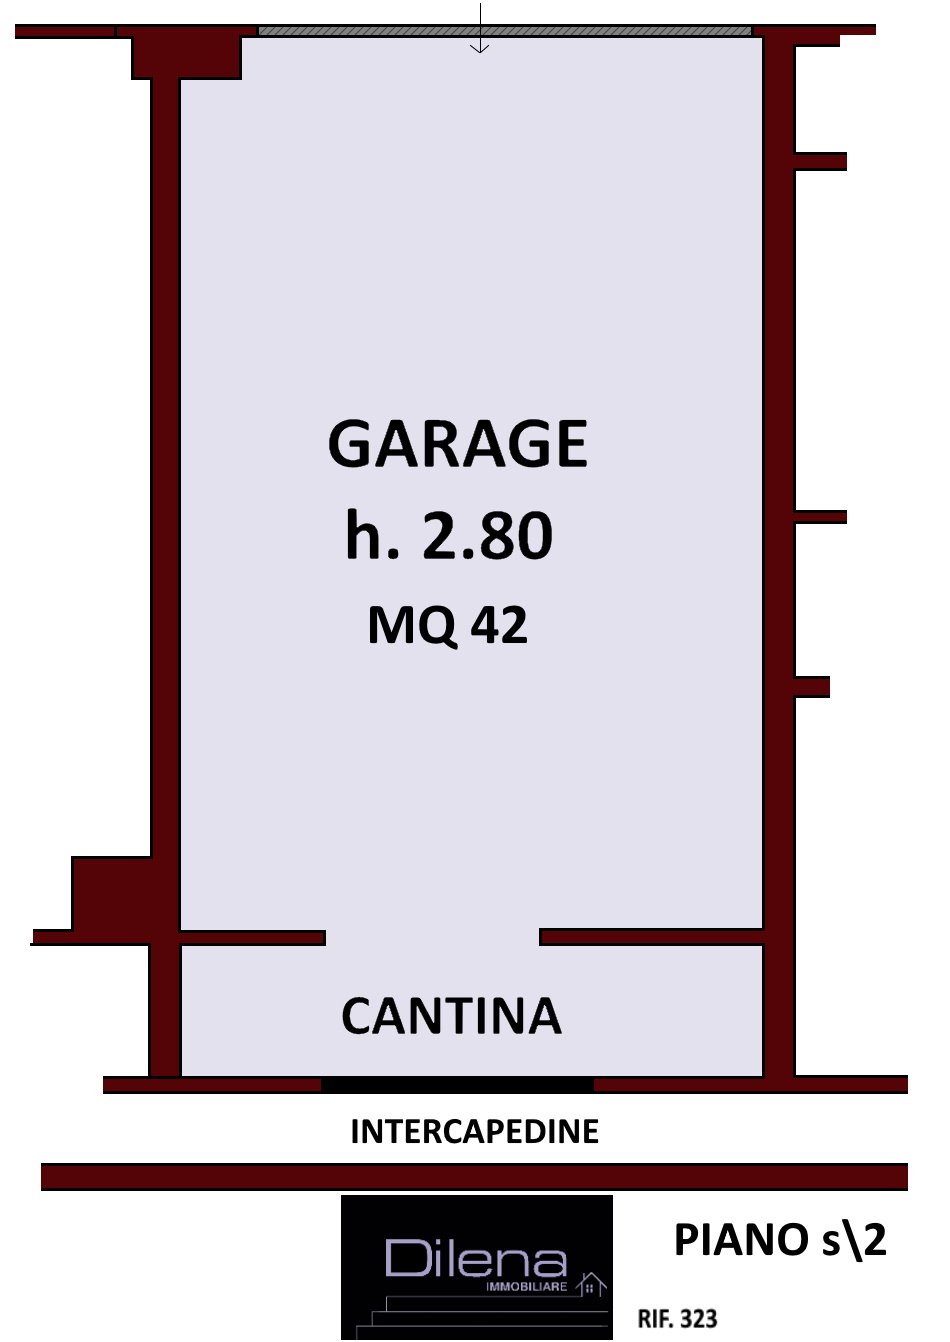 planimetria garage piano S\2